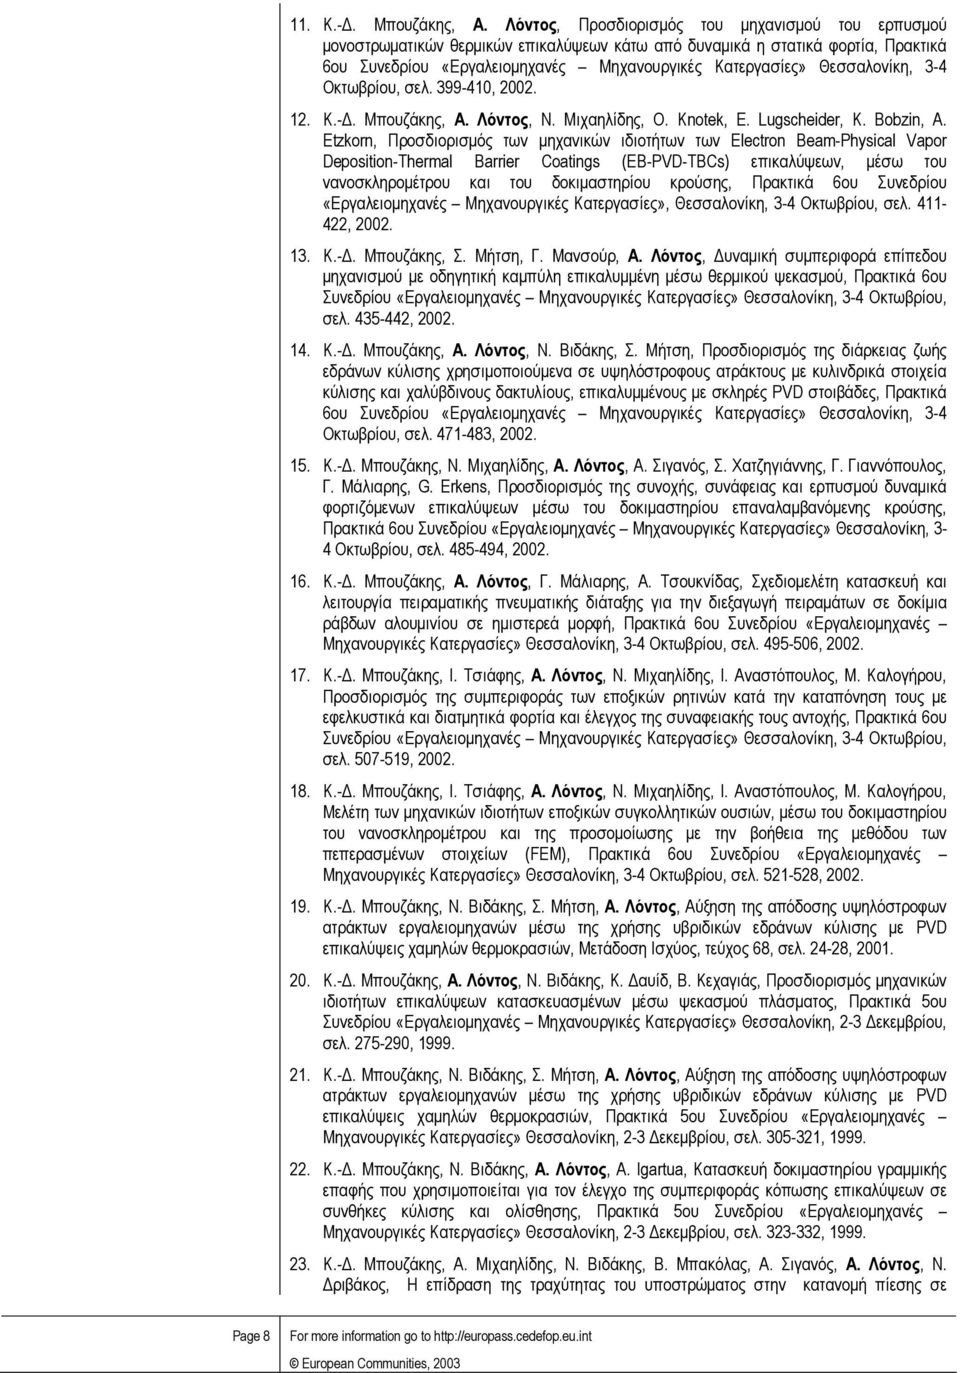 Θεσσαλονίκη, 3-4 Οκτωβρίου, σελ. 399-410, 2002. 12. K.-. Μπουζάκης, A. Λόντος, N. Μιχαηλίδης, O. Knotek, E. Lugscheider, K. Bobzin, A.